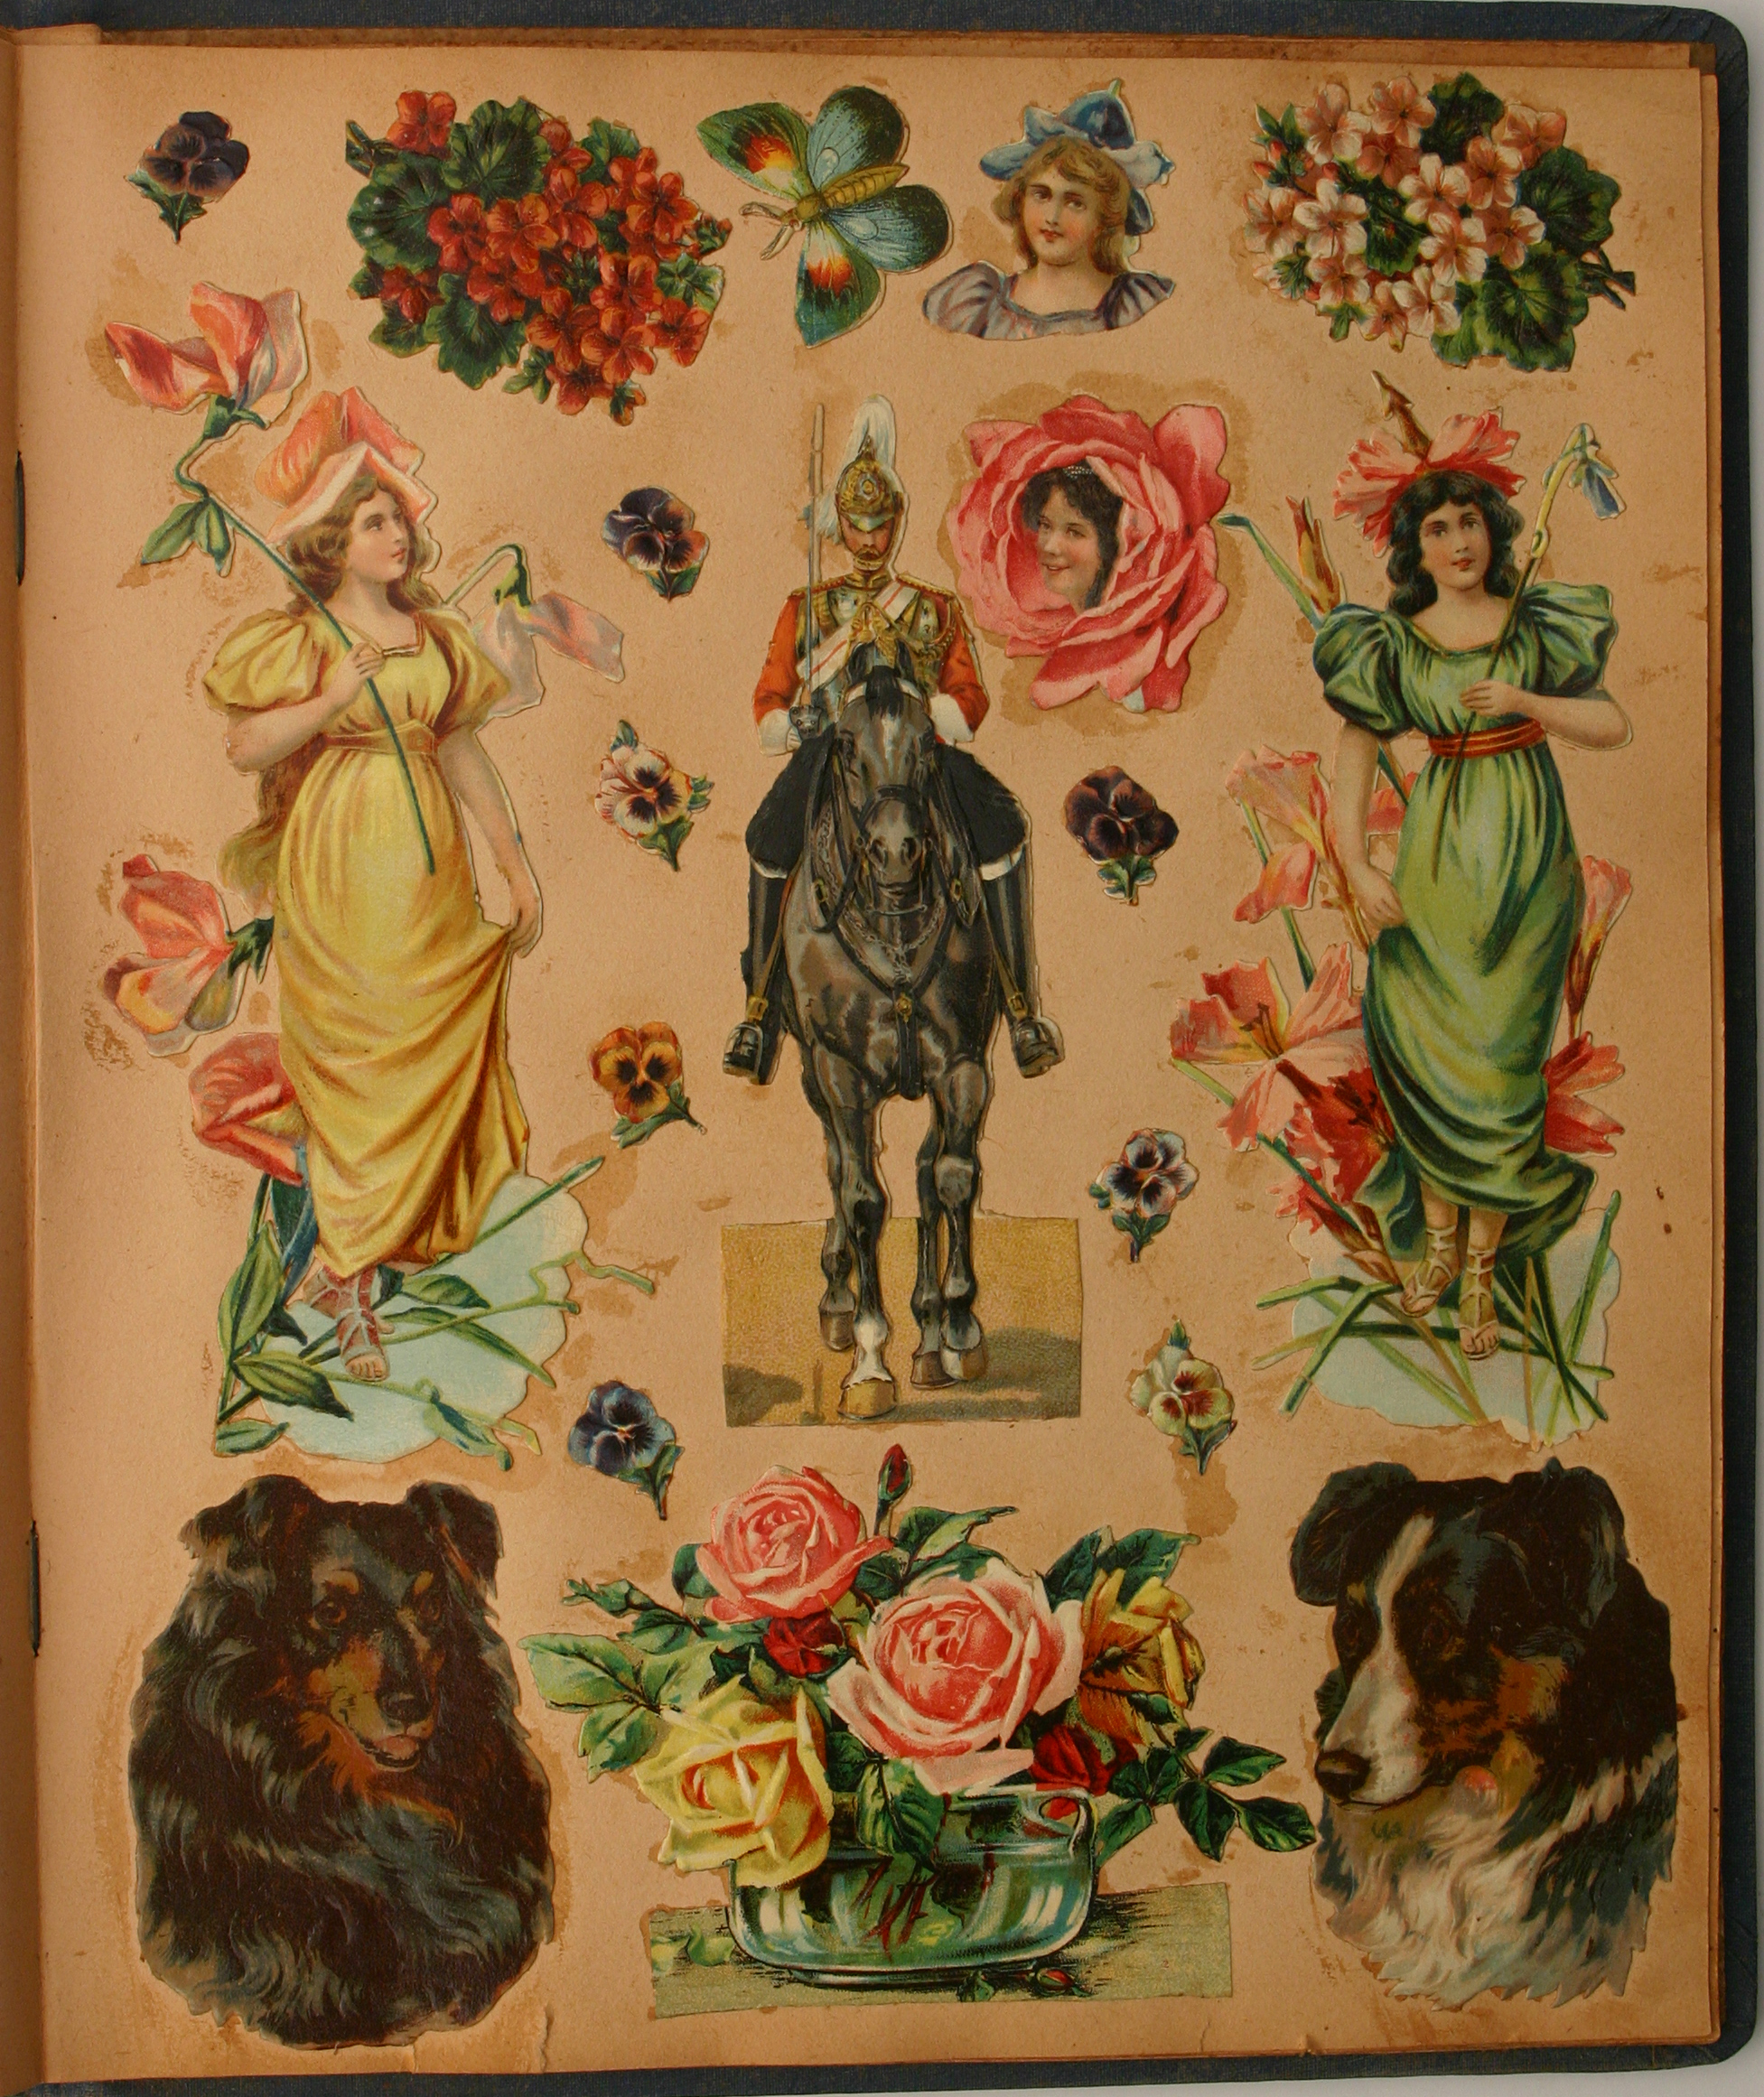 Victorian era scrapbooks